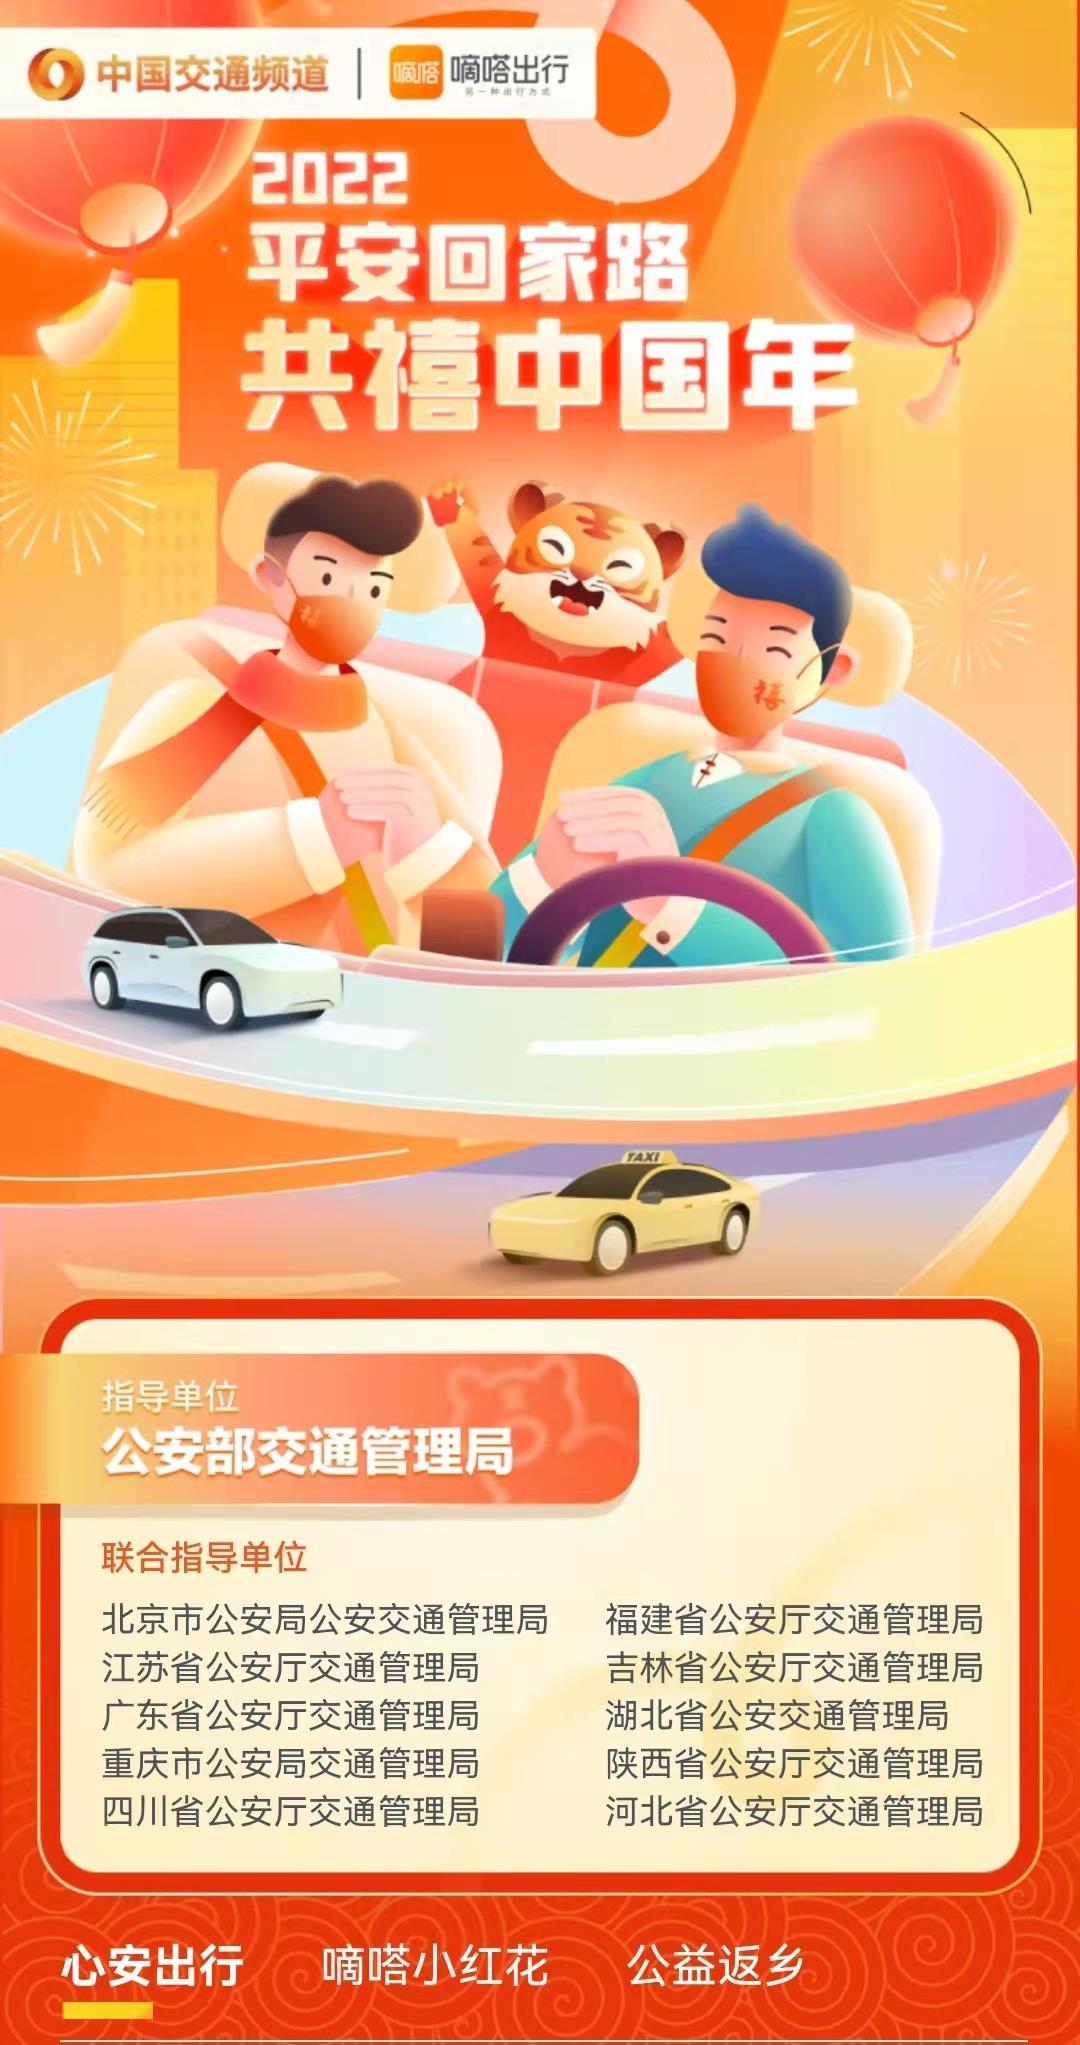 虎年春节如何安全、健康出行？ 嘀嗒出行联动多方上线「2022春节安心频道」